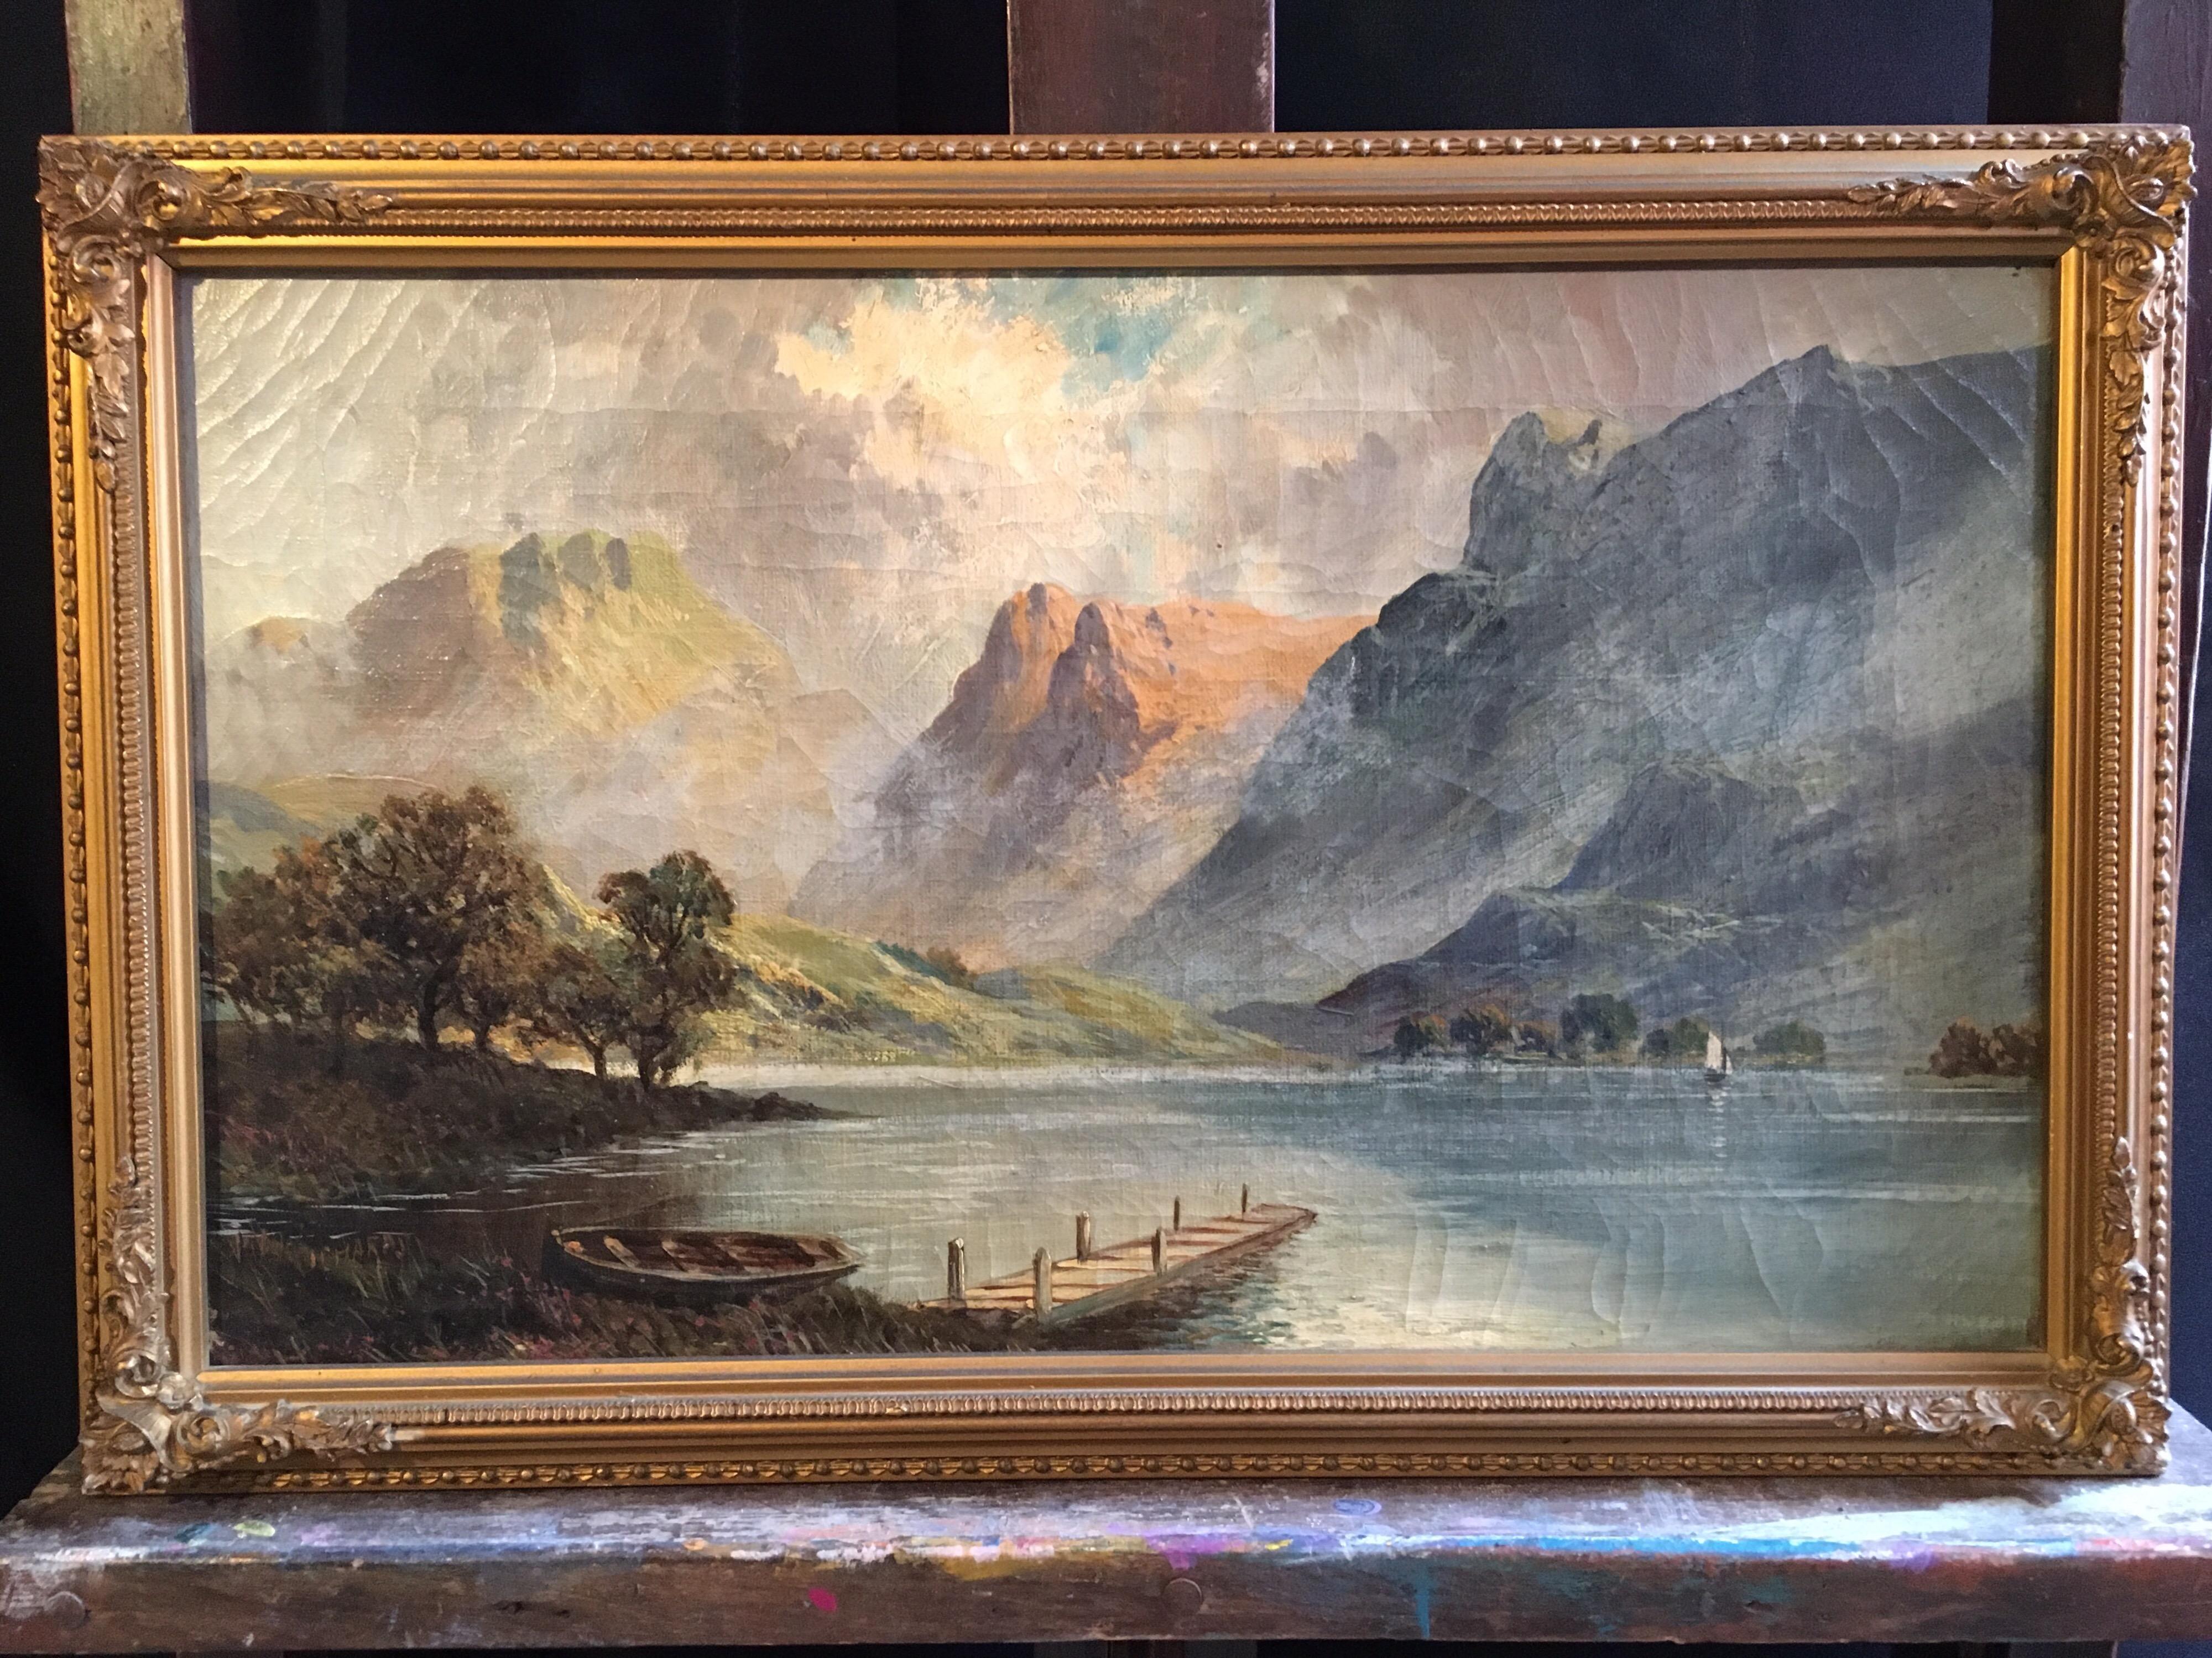 Loch Lomond, View of the Jetty, ancienne peinture à l'huile écossaise, signée - Painting de Francis E. Jamieson